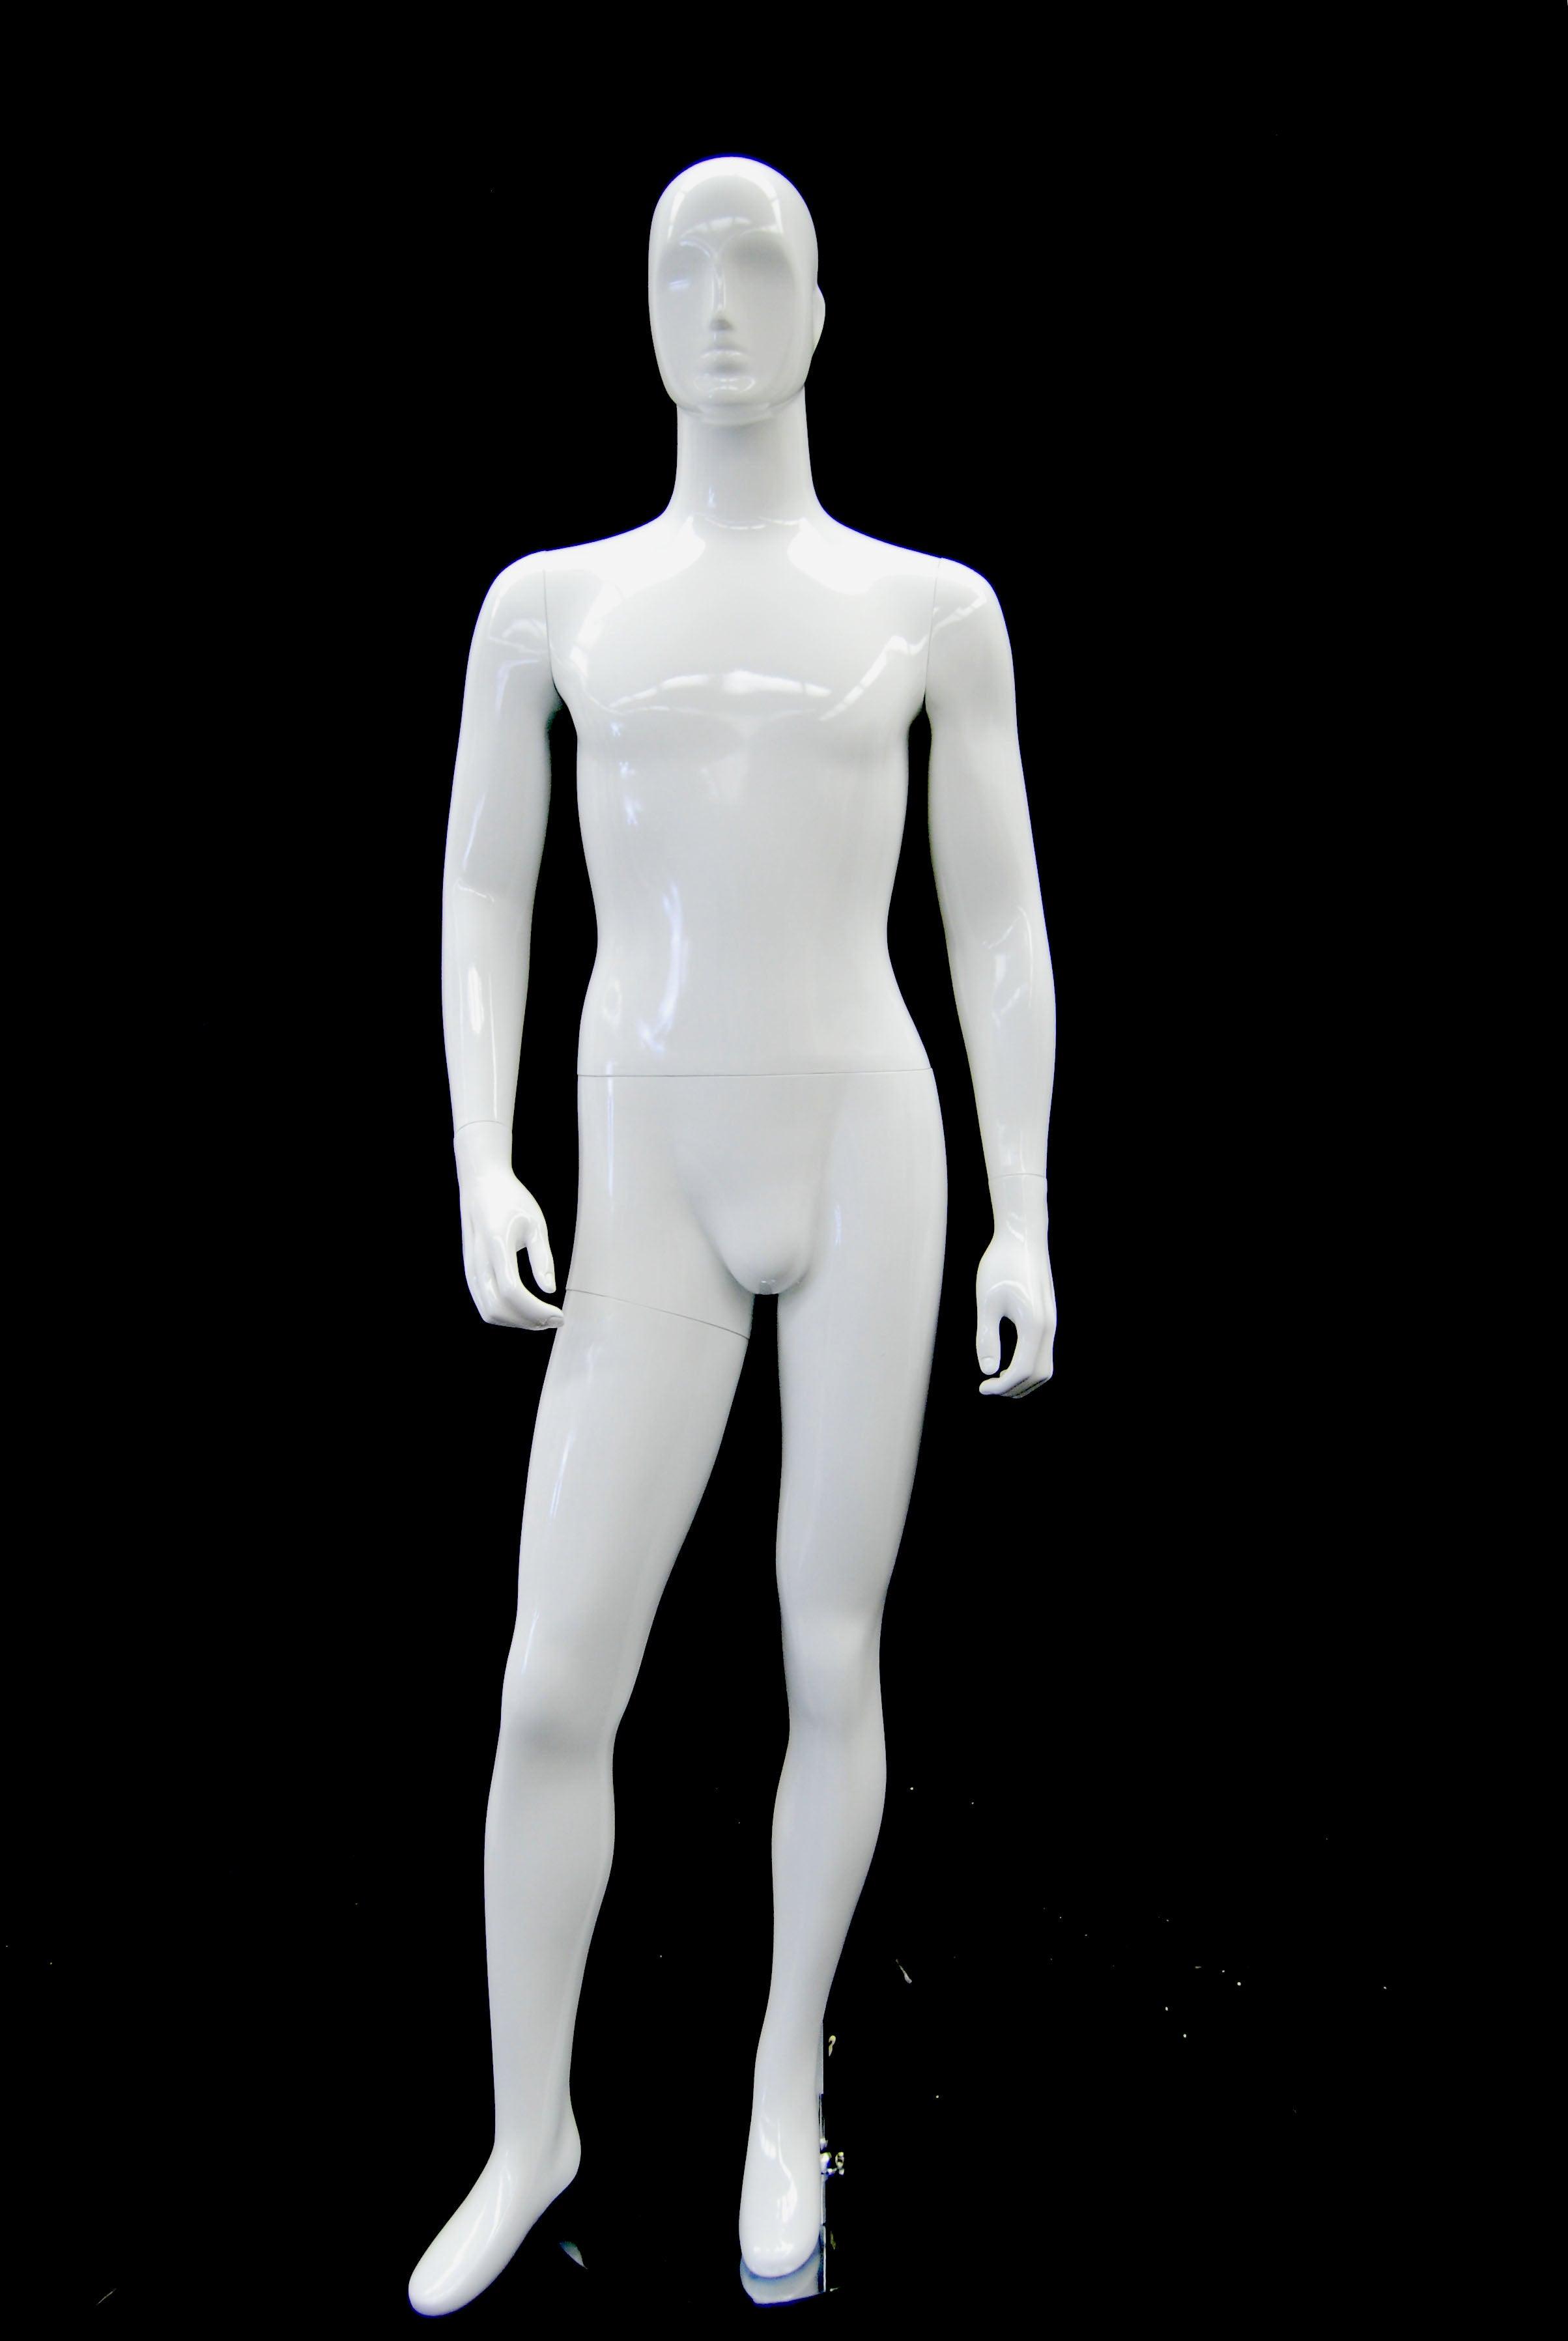 black white male clothing mannequin full